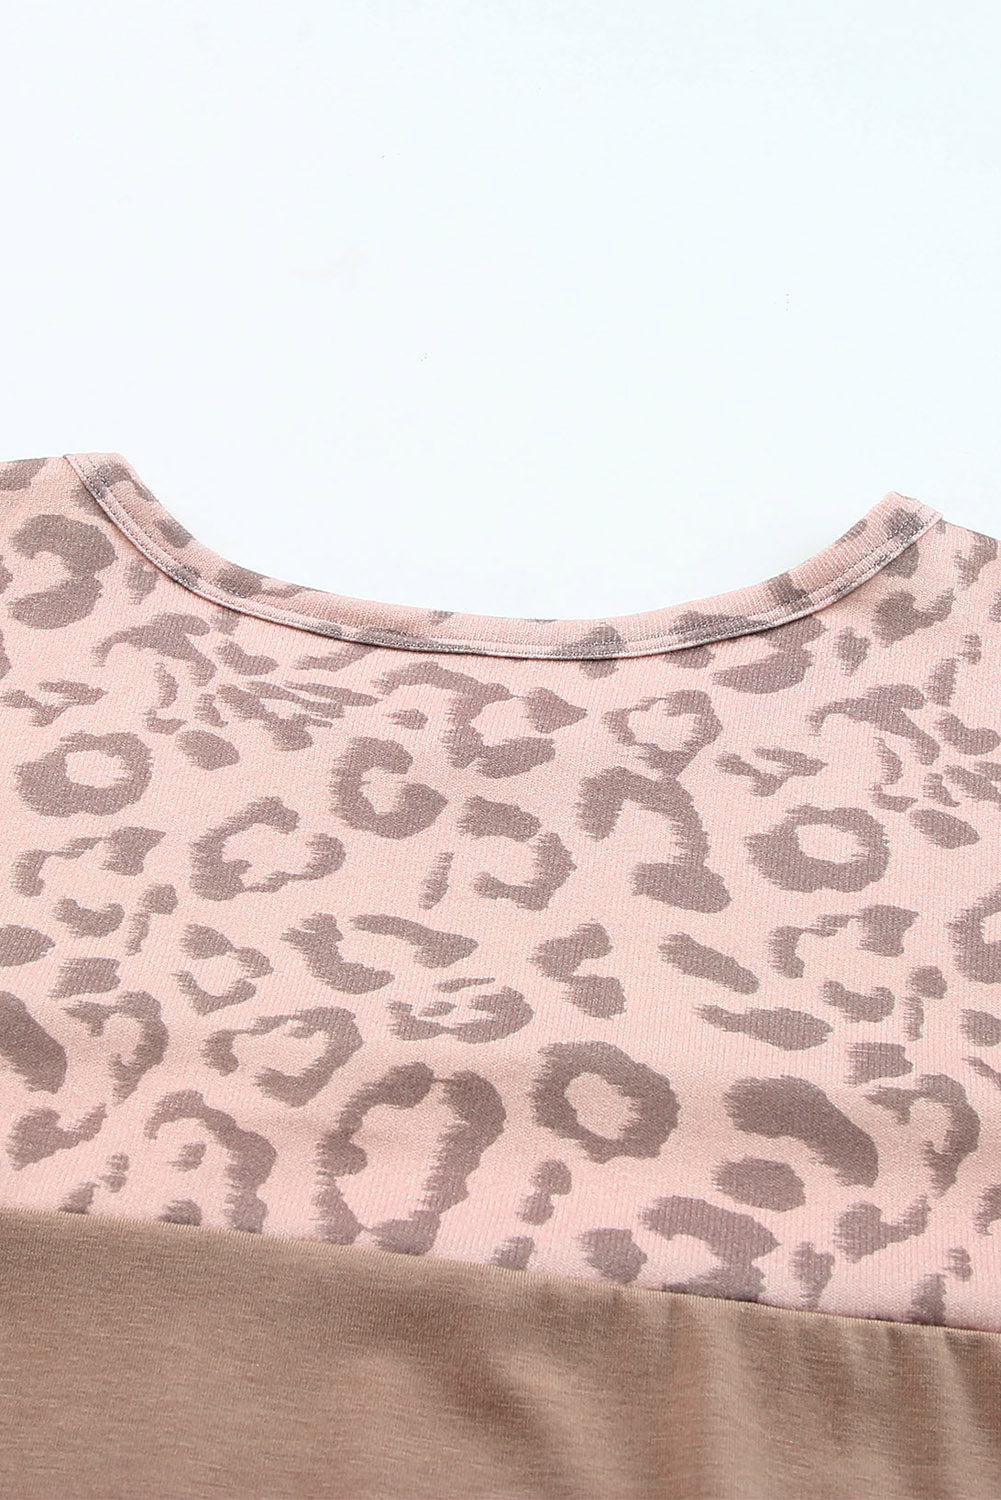 Kaki majica s leopard jarmom u boji blokova veće veličine